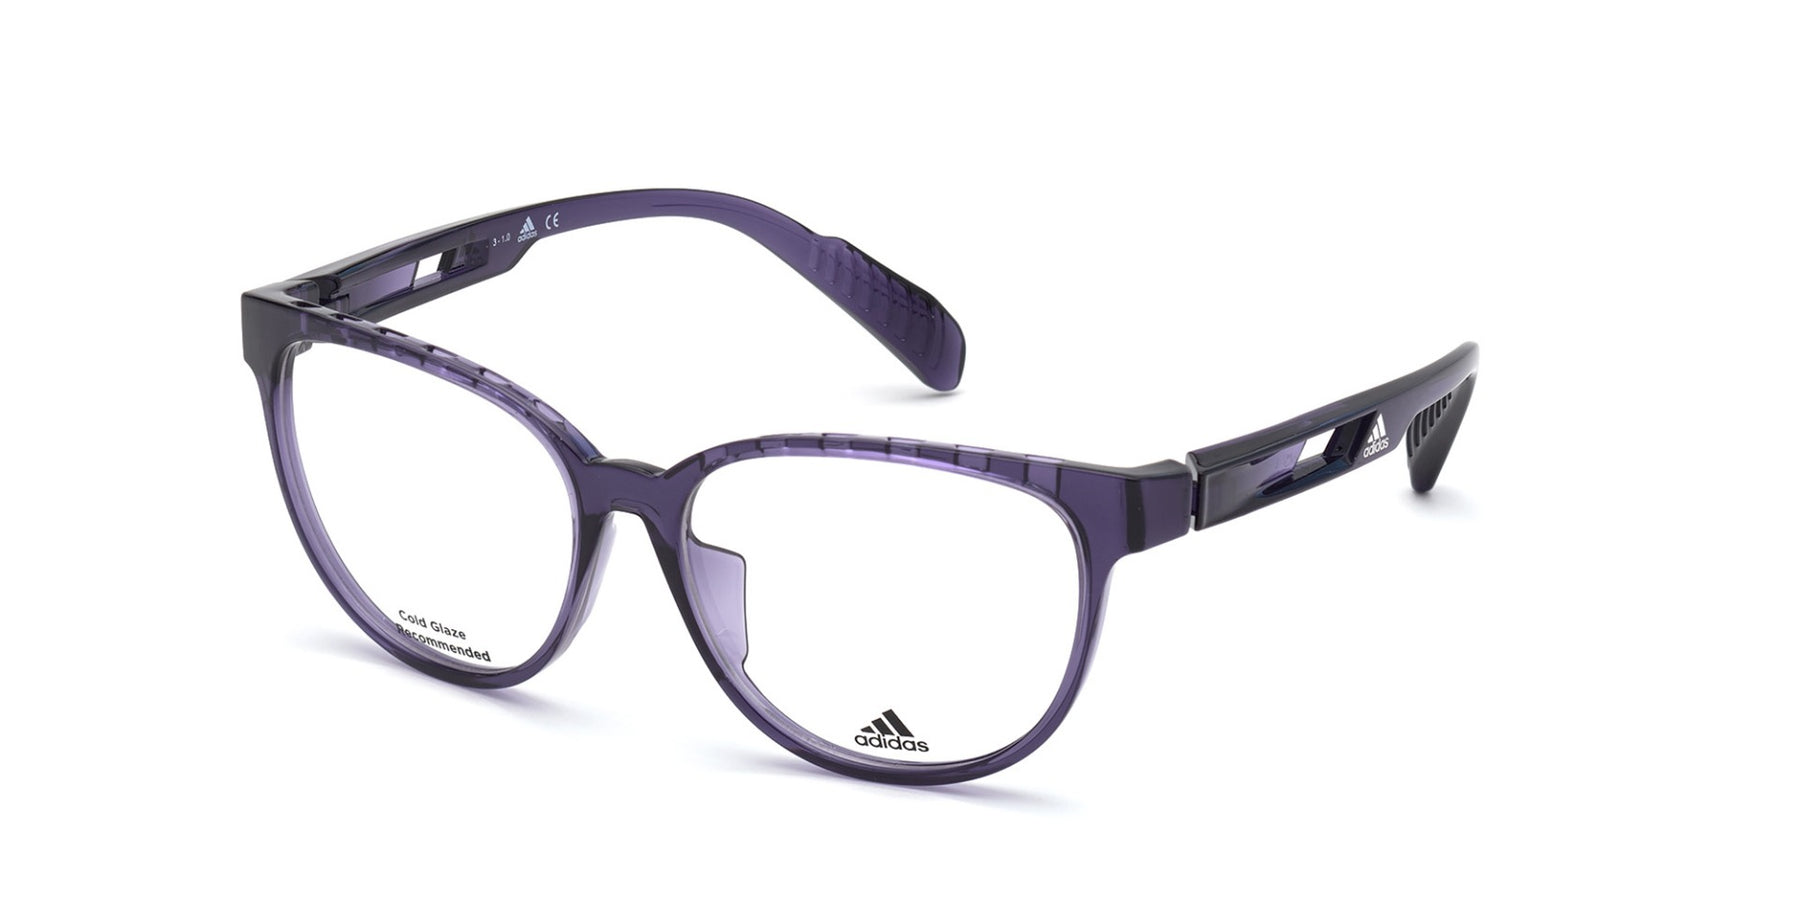 Gensidig svag enhed Adidas SP5002 Prescription Eyeglasses | escapeauthority.com